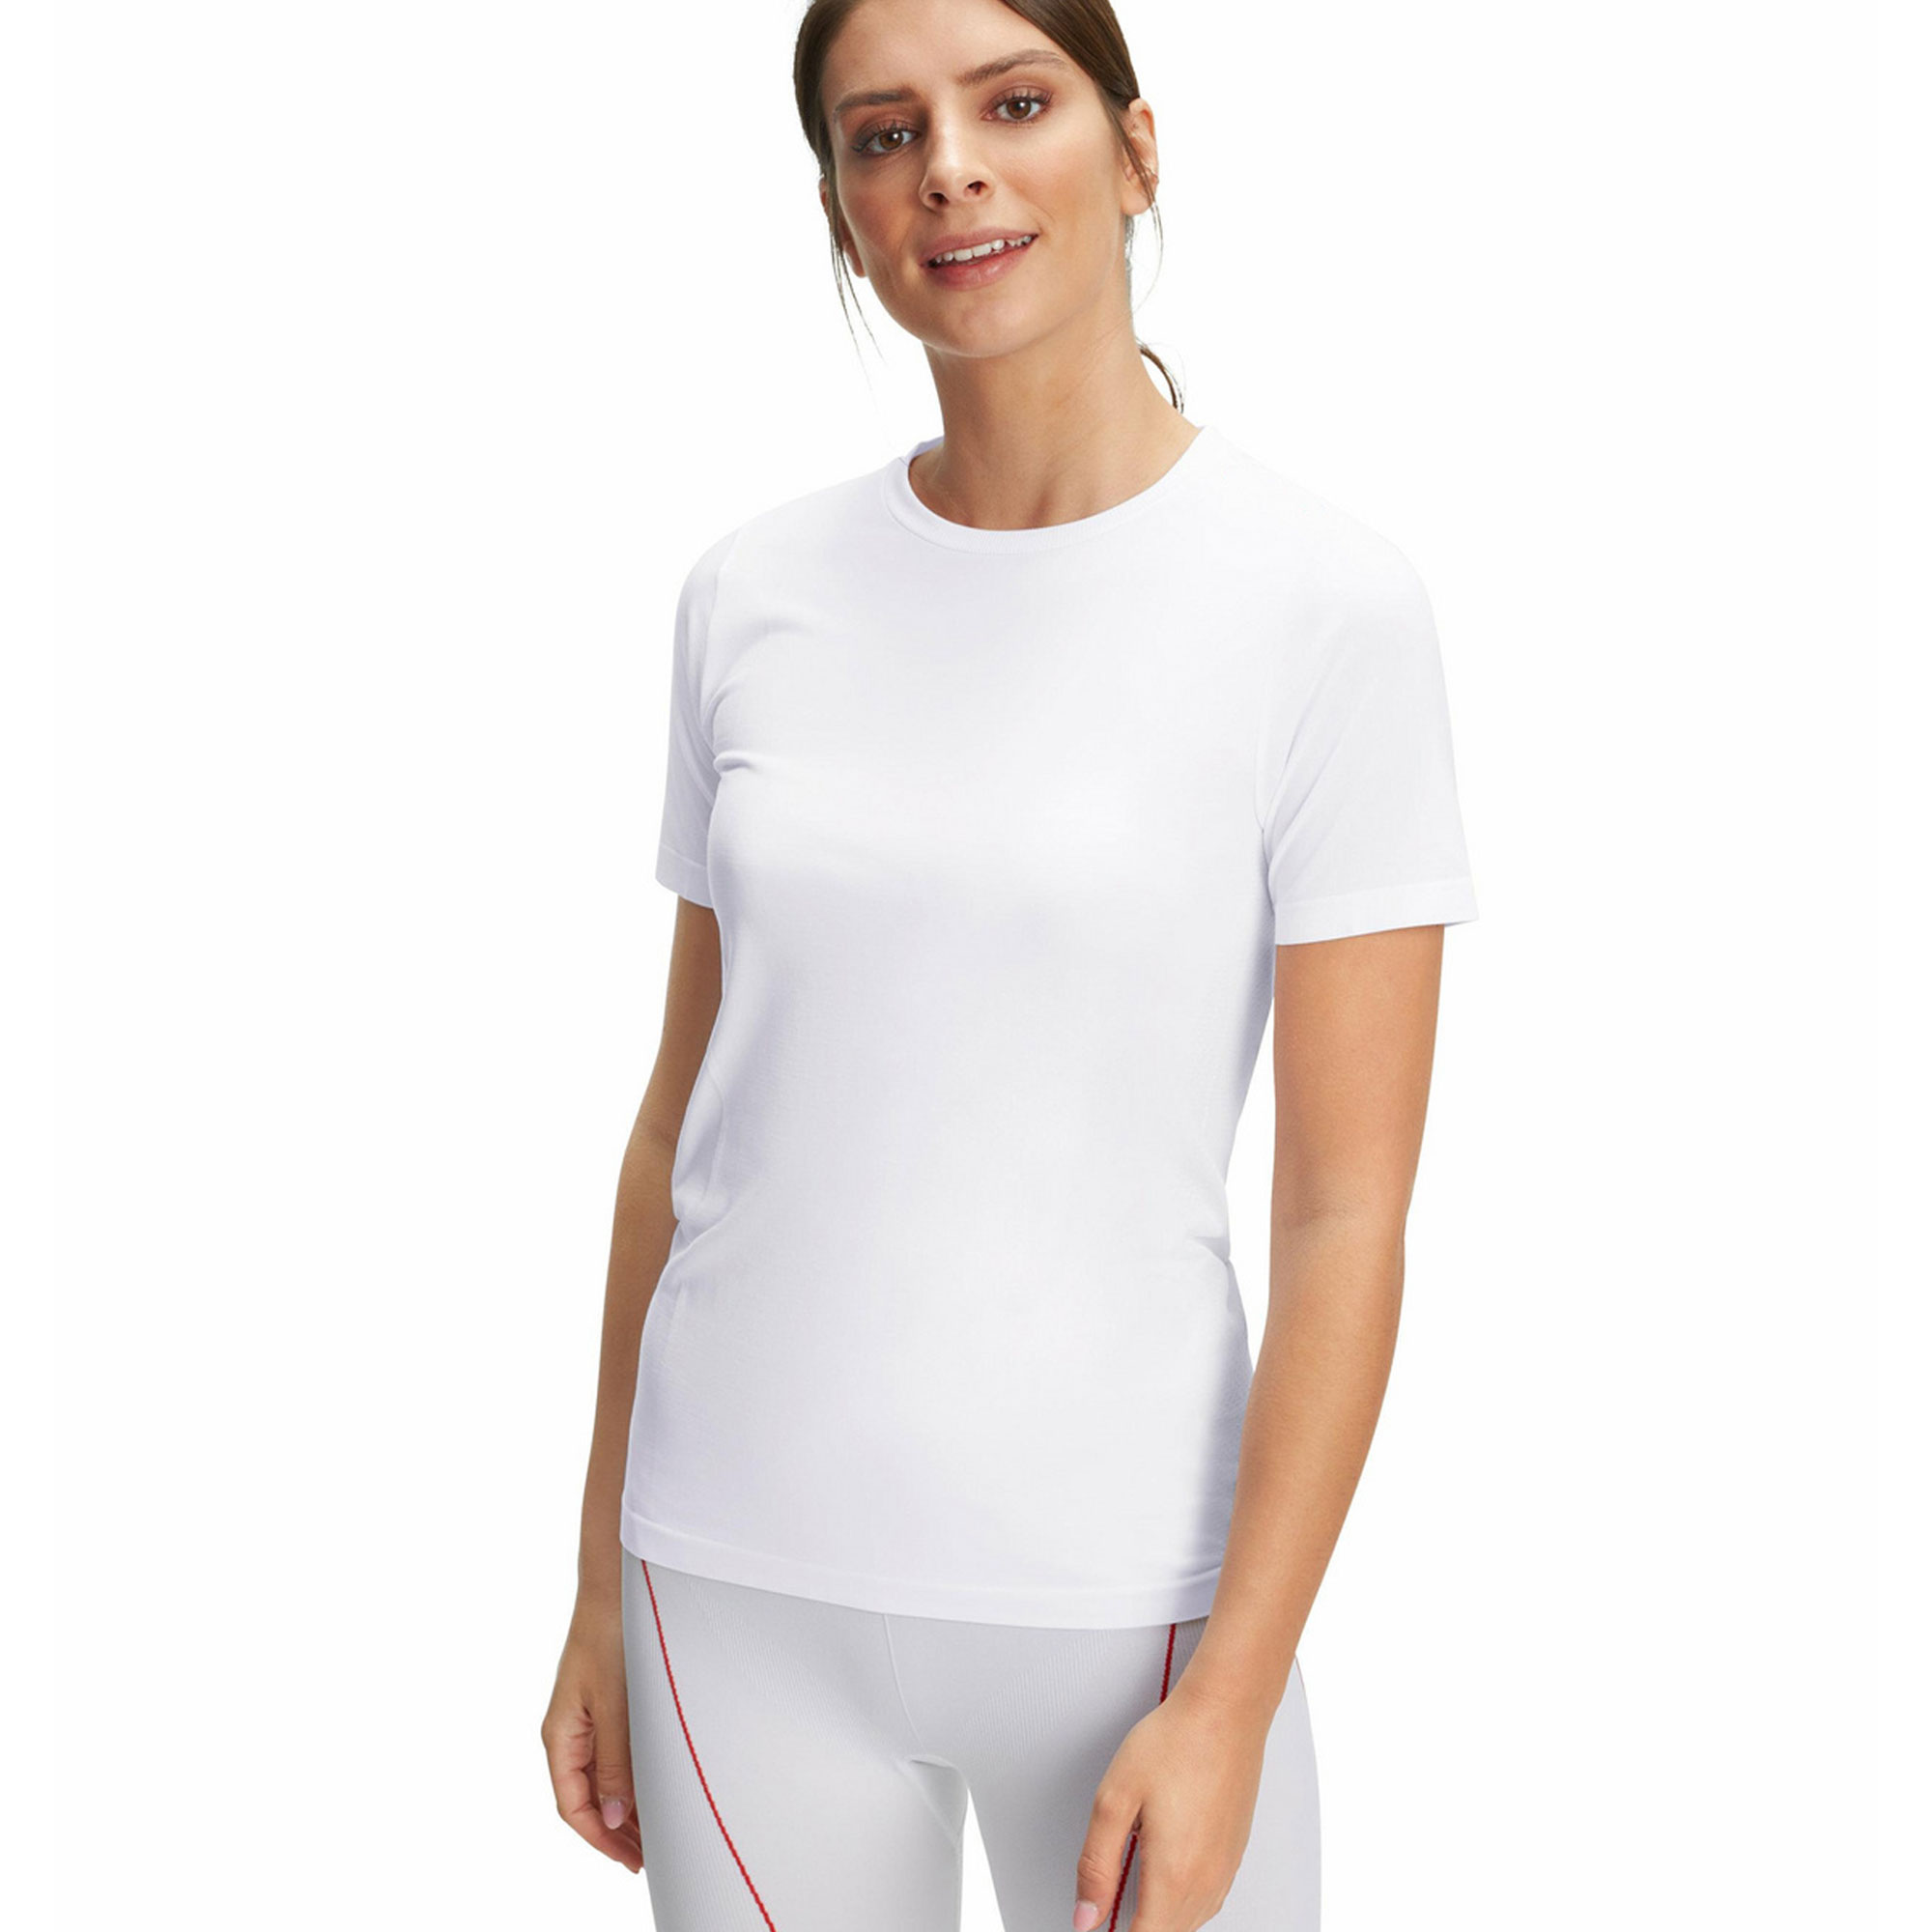 Heildverslun Gym Wear Women Custom Blank Crop Top gym yoga T Shirt